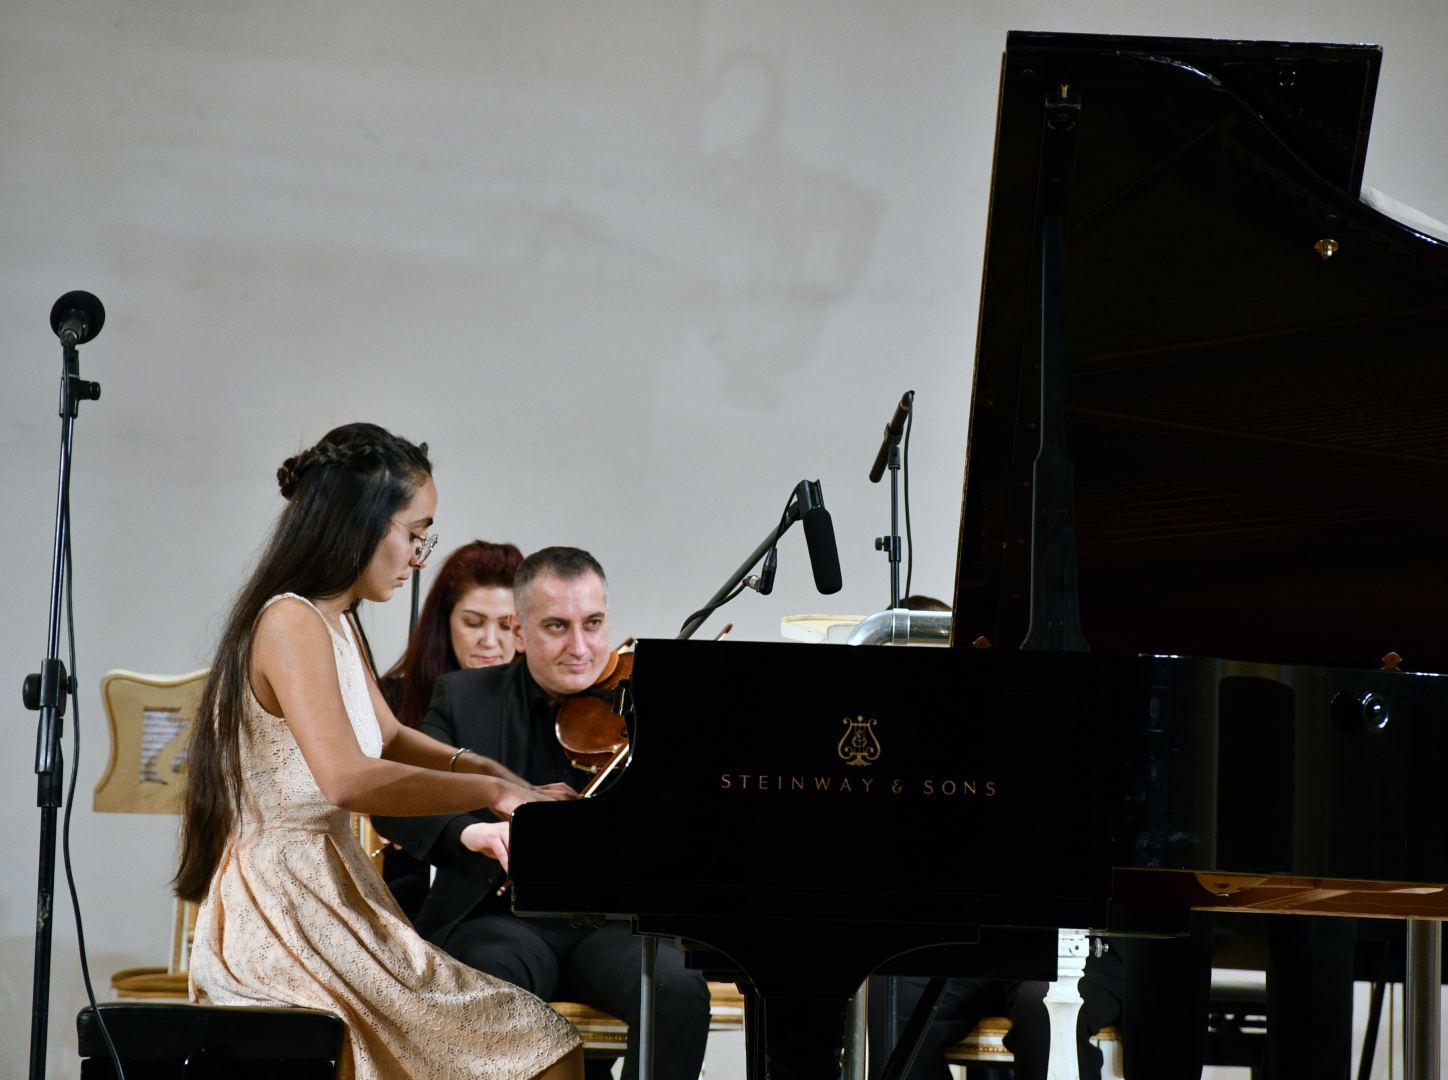 Молодые звезды классической музыки отметили свой праздник в Баку (ФОТО)